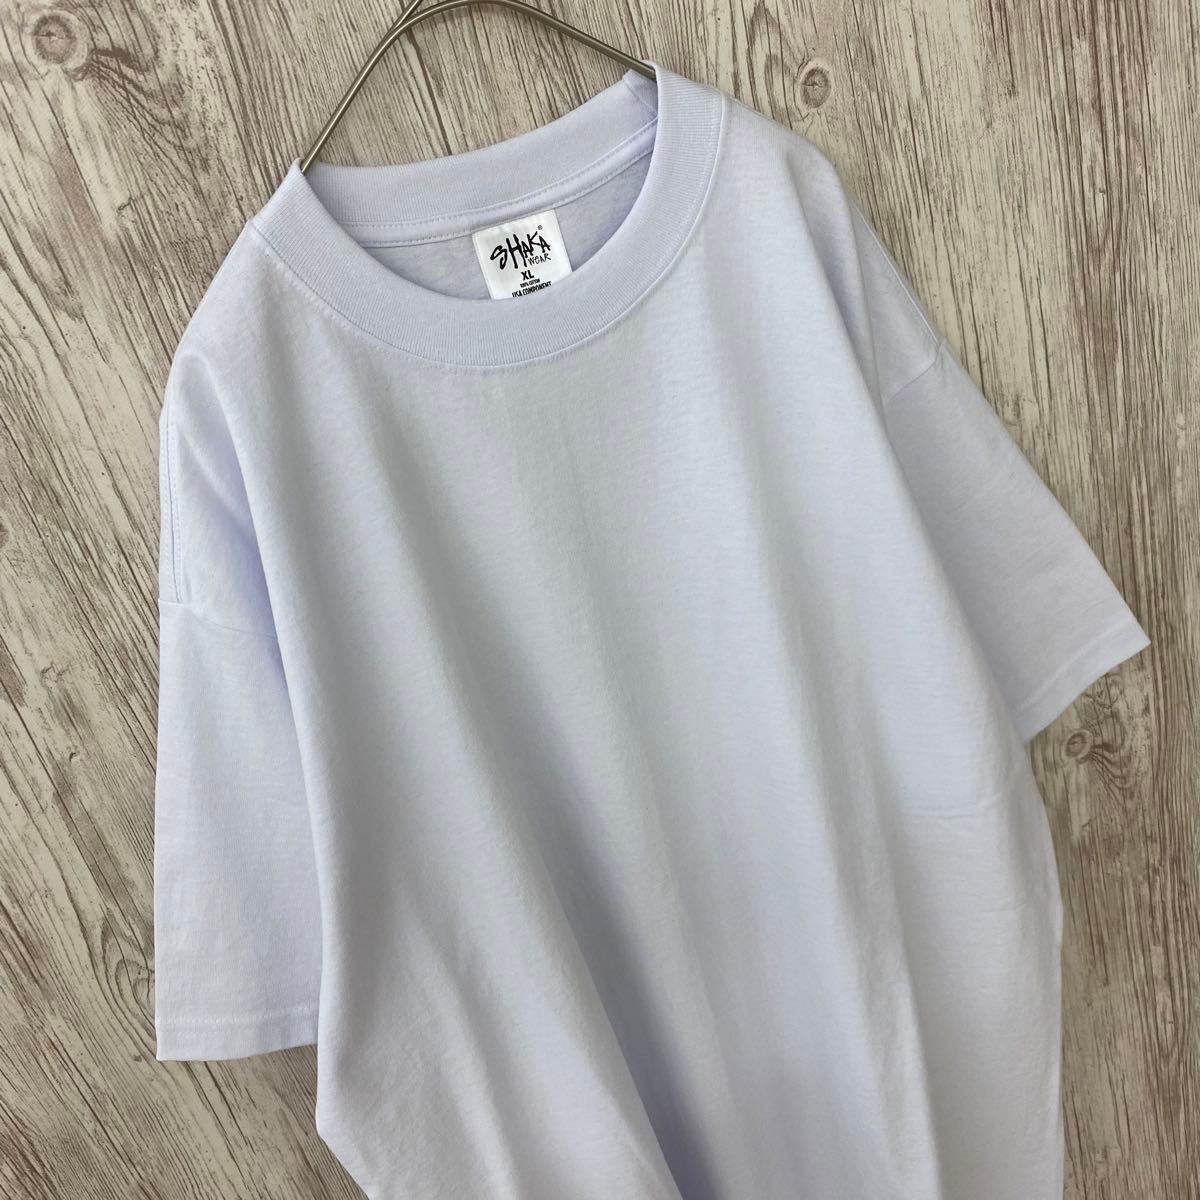 新品未使用 シャカウェア 7.5oz マックスヘビーウエイト 無地 半袖Tシャツ 白 XLサイズ SHAKAWEAR